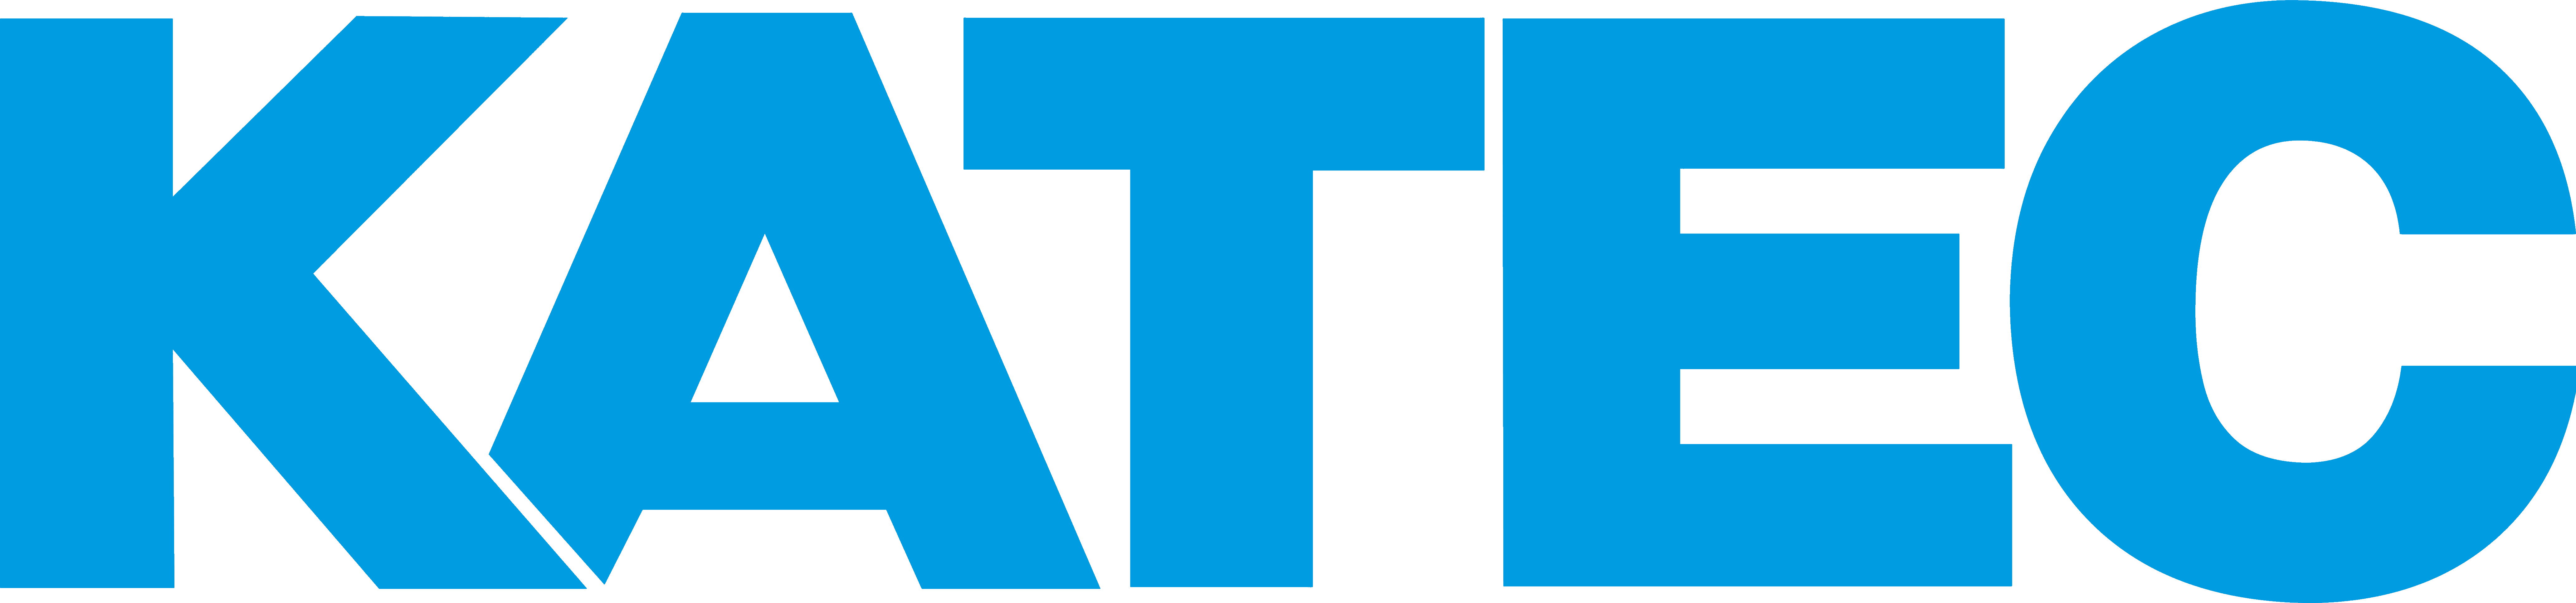 Katec Katalysatoren, Logo